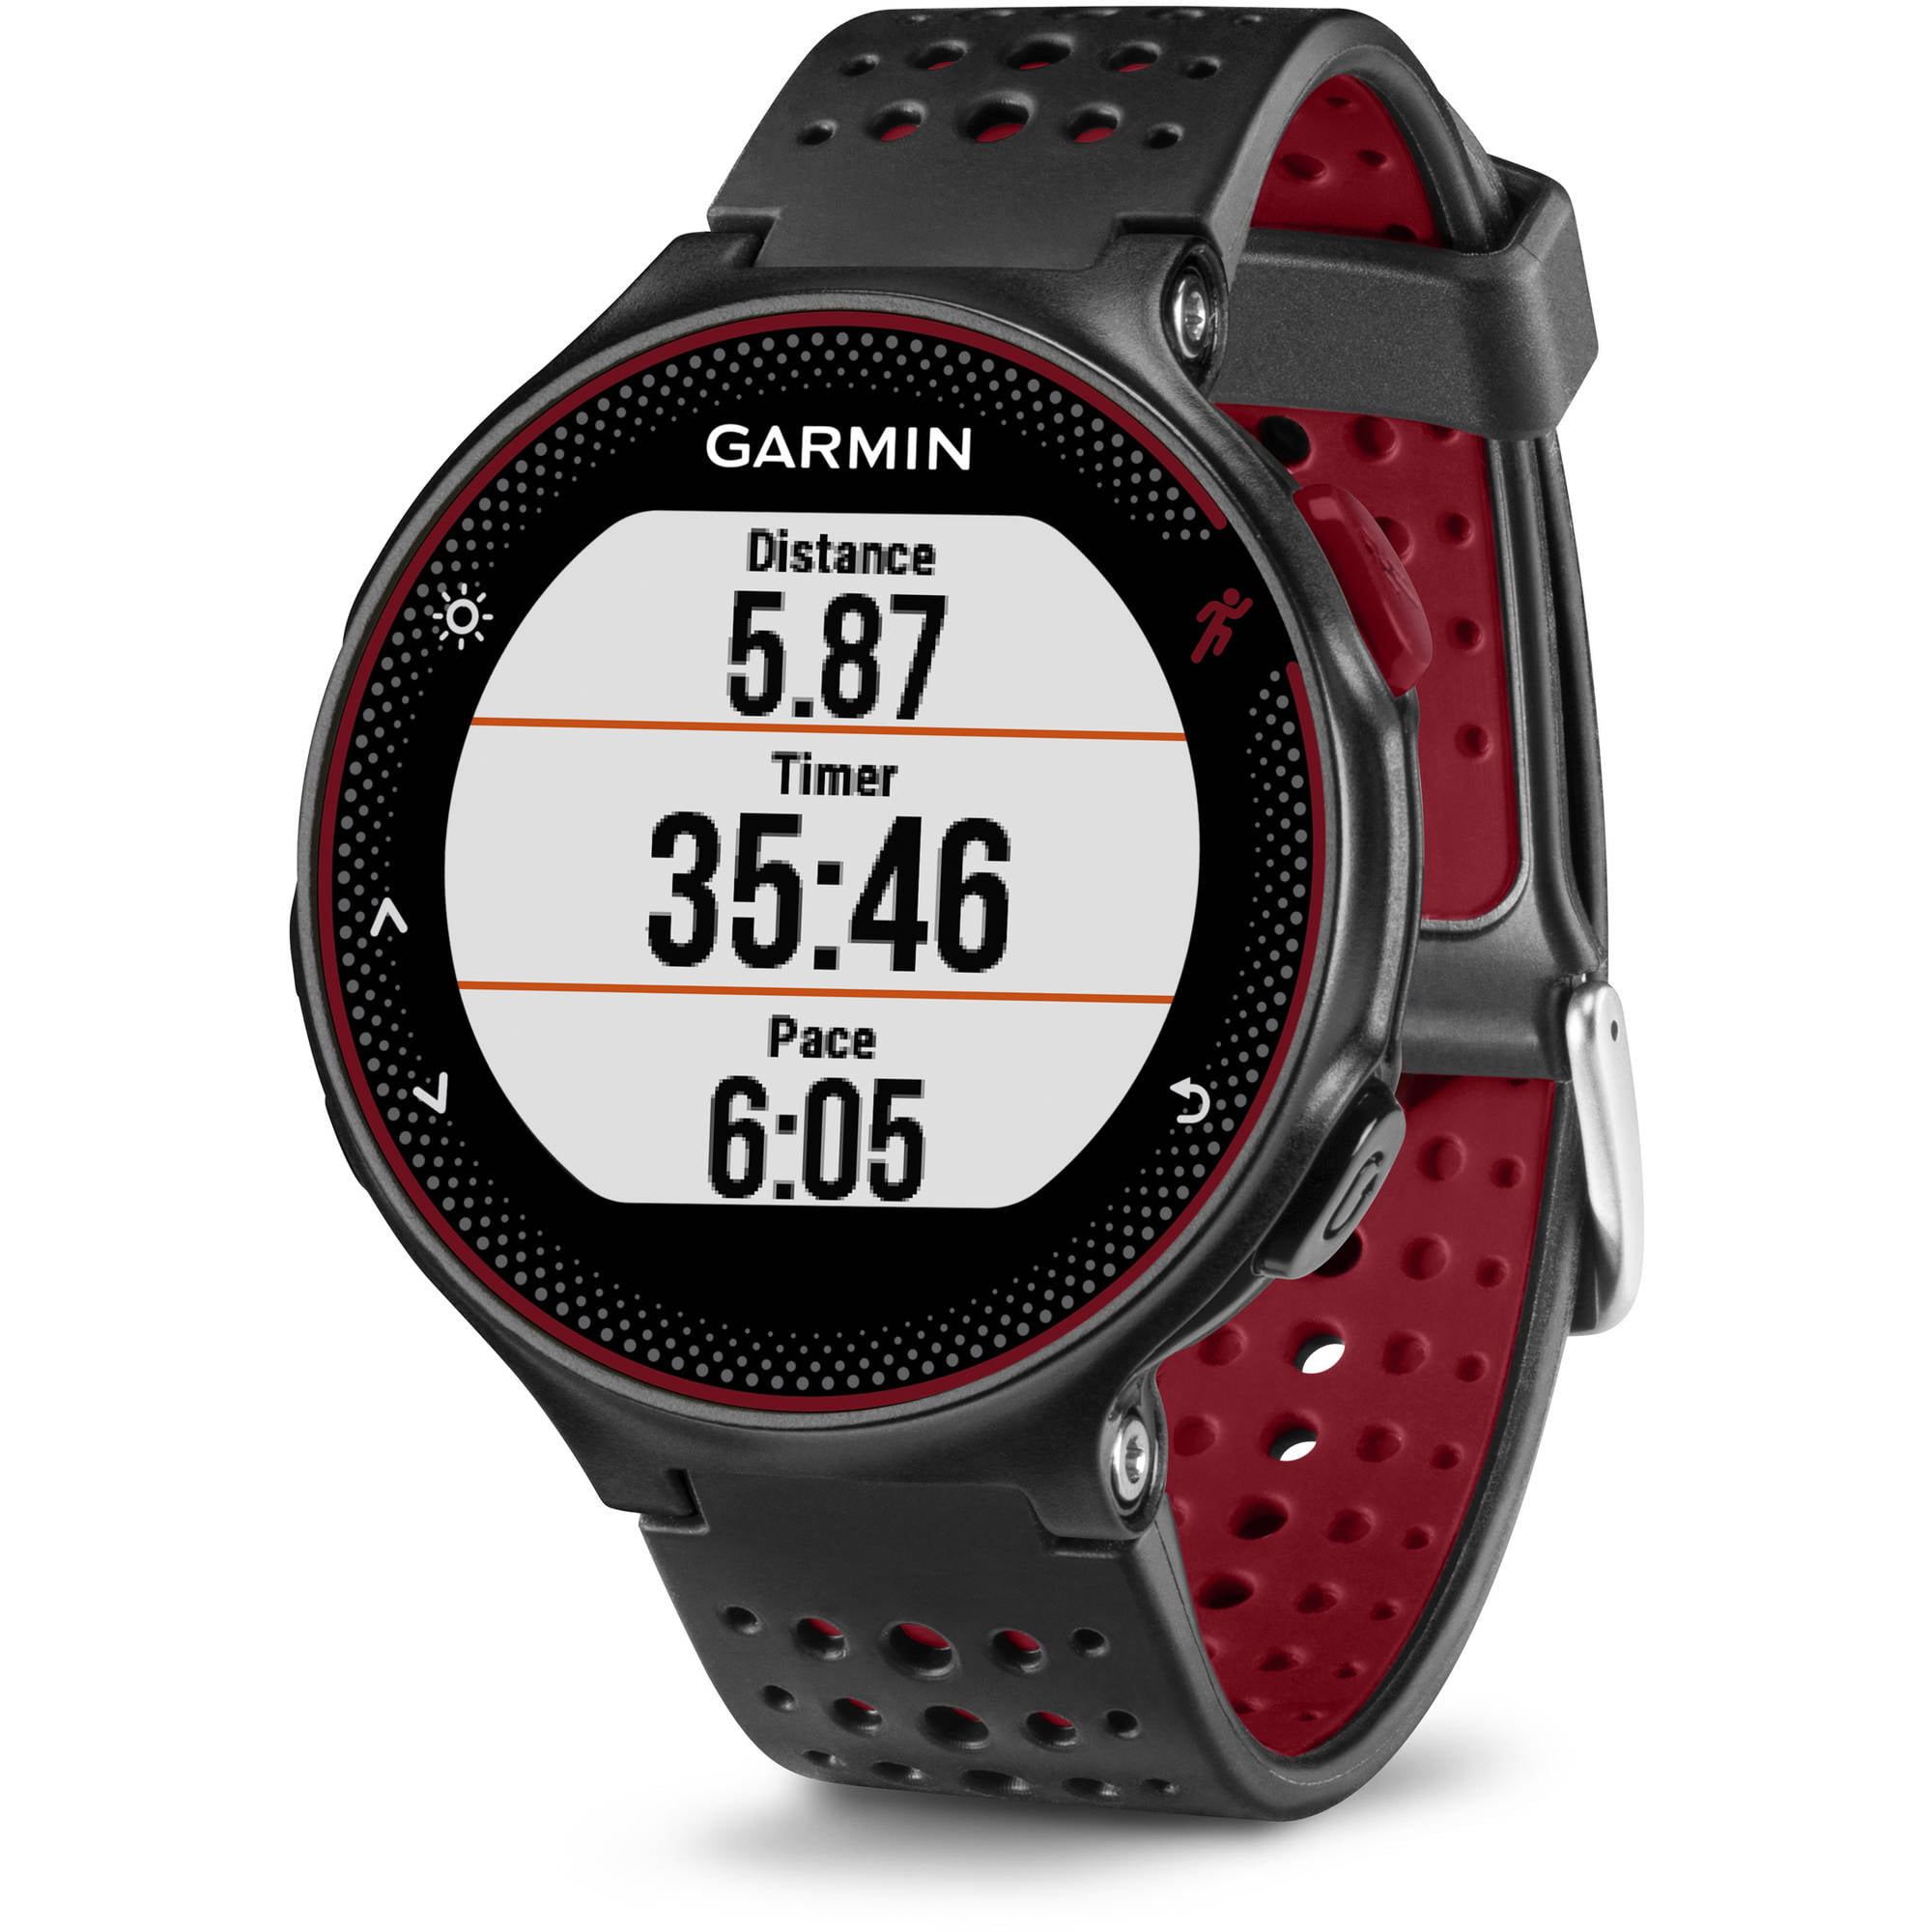 GEAR REVIEW: Garmin Forerunner 235 Fitness Tracker Watch